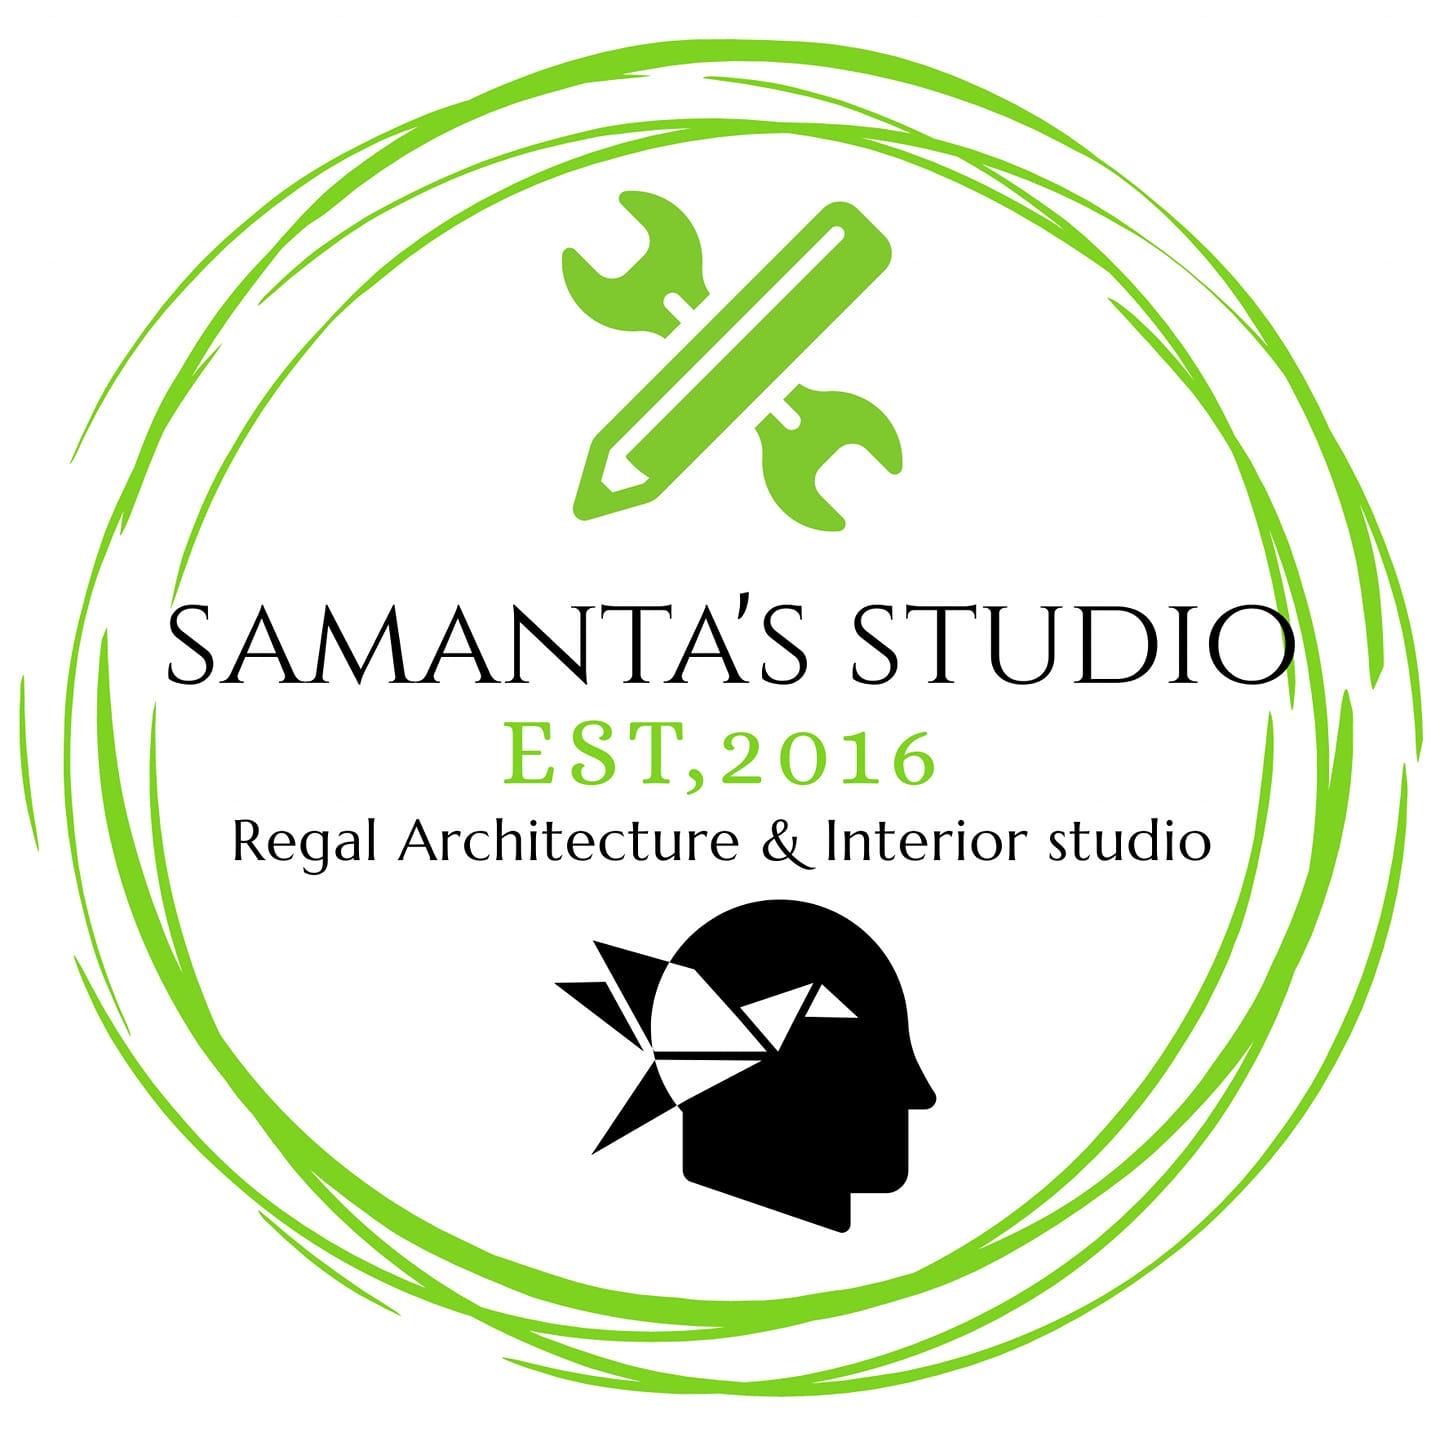 Samanta’s Studio